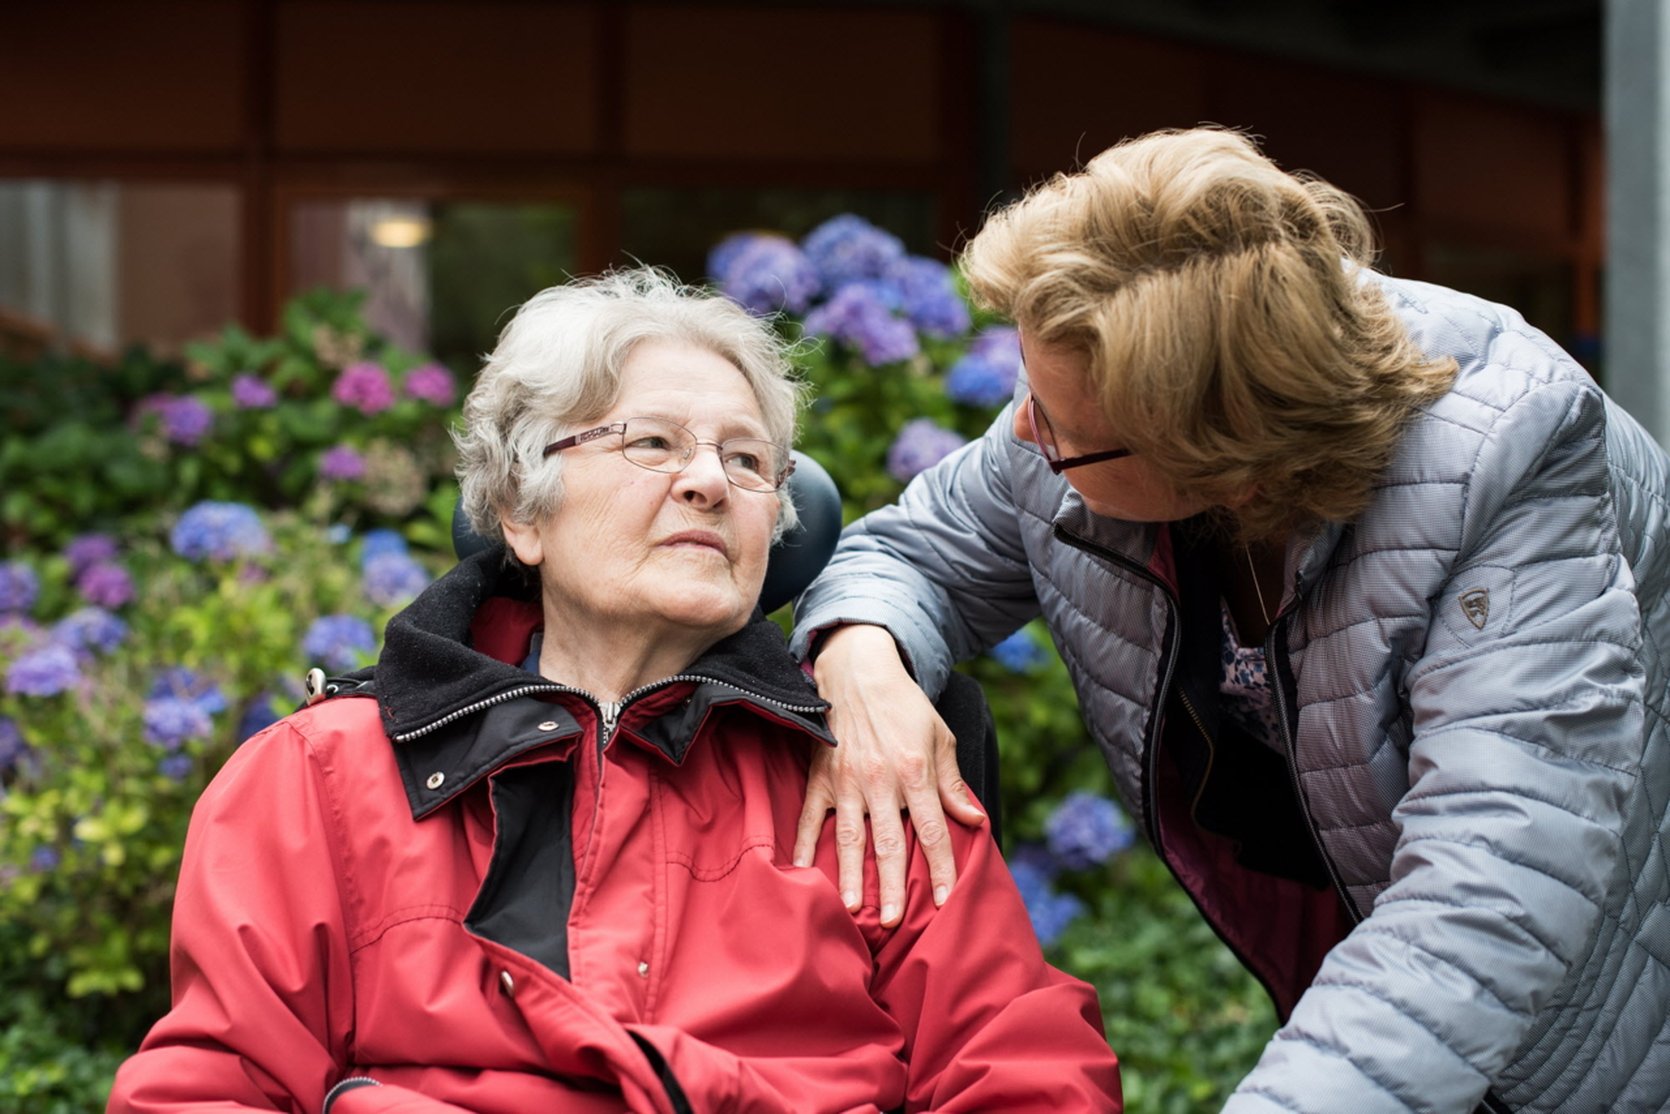 Huiselijke omgeving draagt bij aan welbevinden bewoners met dementie